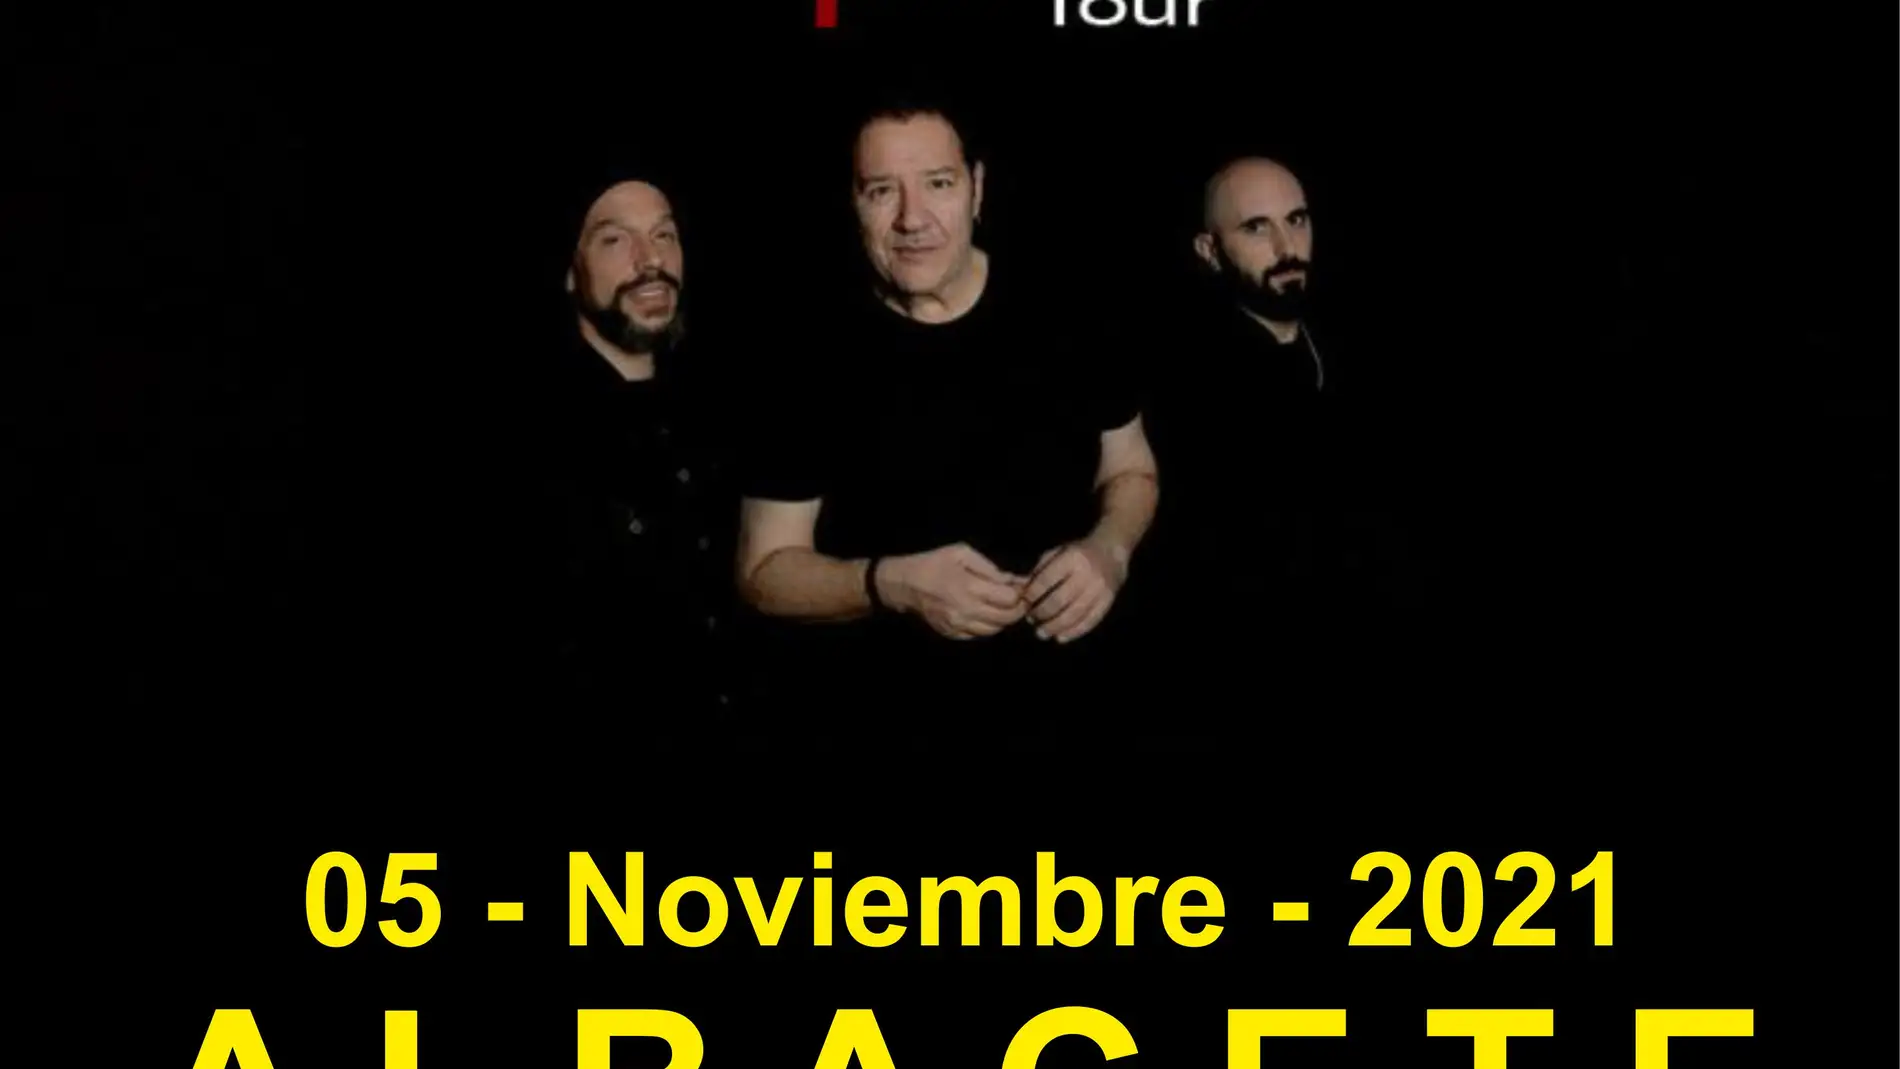 A la venta las entradas para ver a Revólver en noviembre en Albacete dentro de su gira “Apolo Tour"